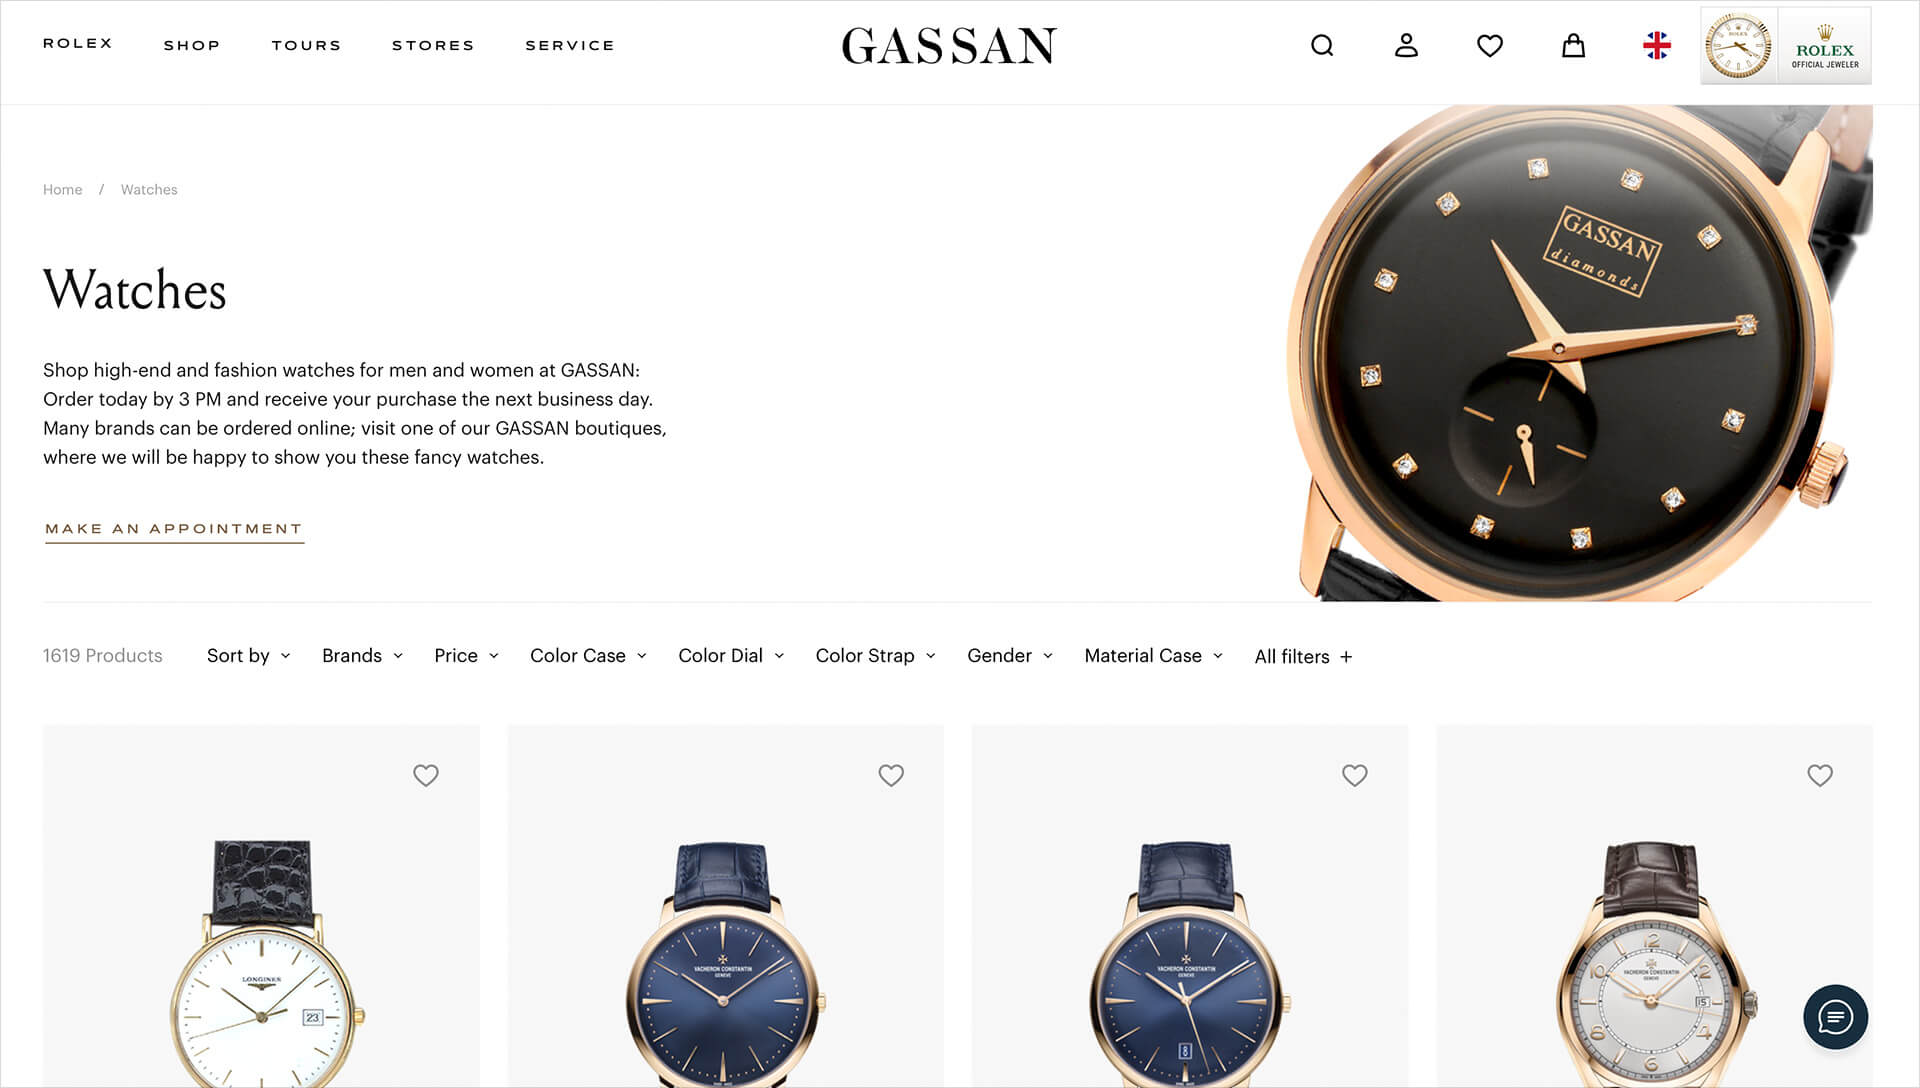 GASSAN website